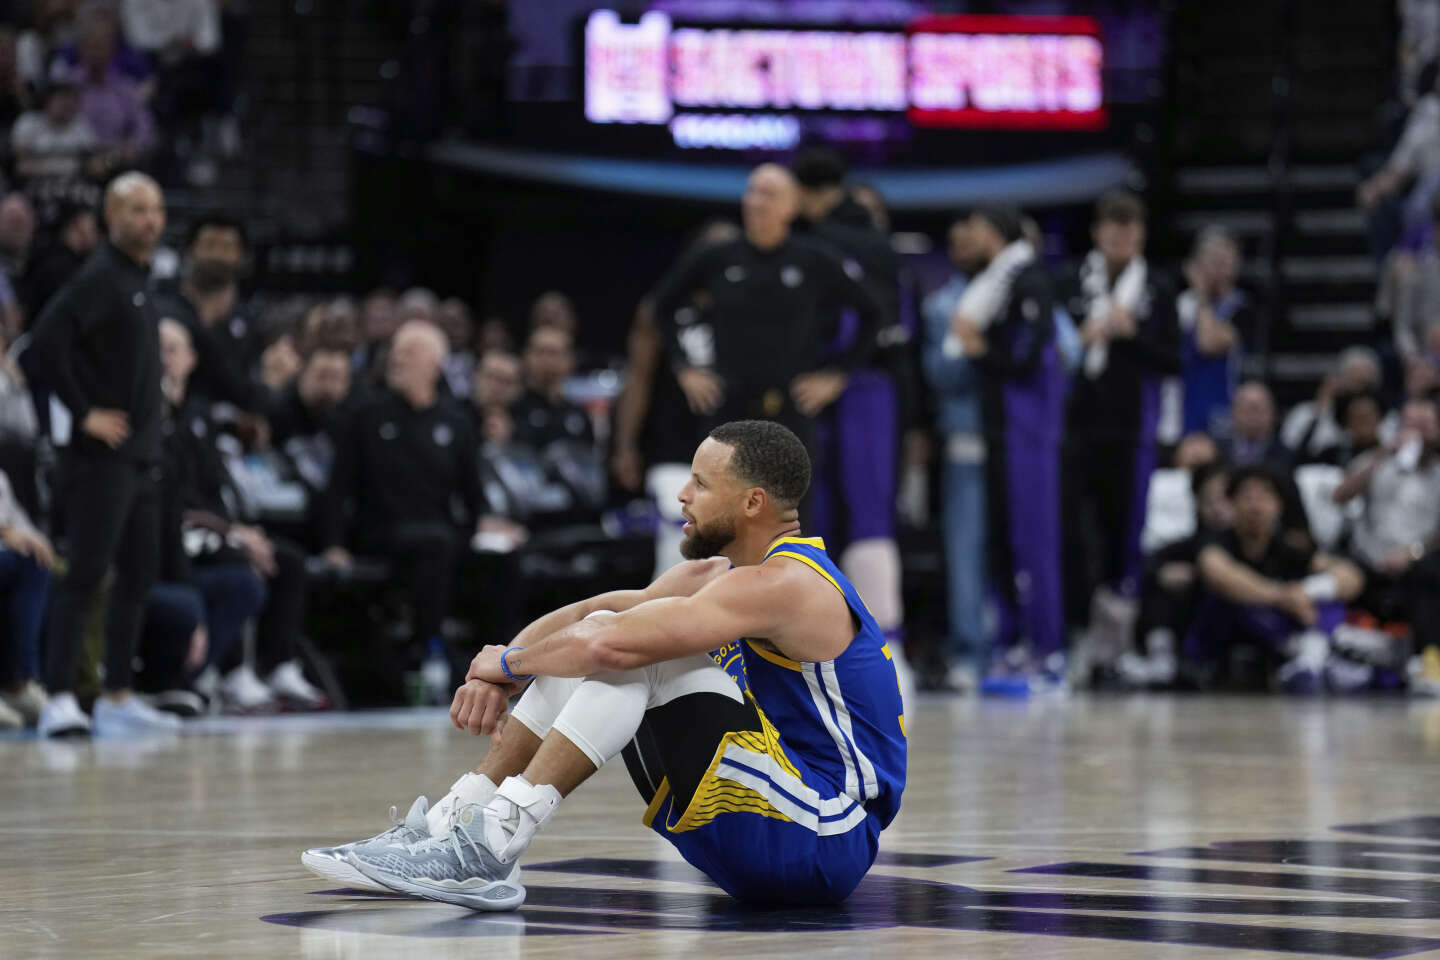 La fin de parcours des Warriors de Stephen Curry, sonne-t-elle le glas de la dynastie Golden State en NBA ?